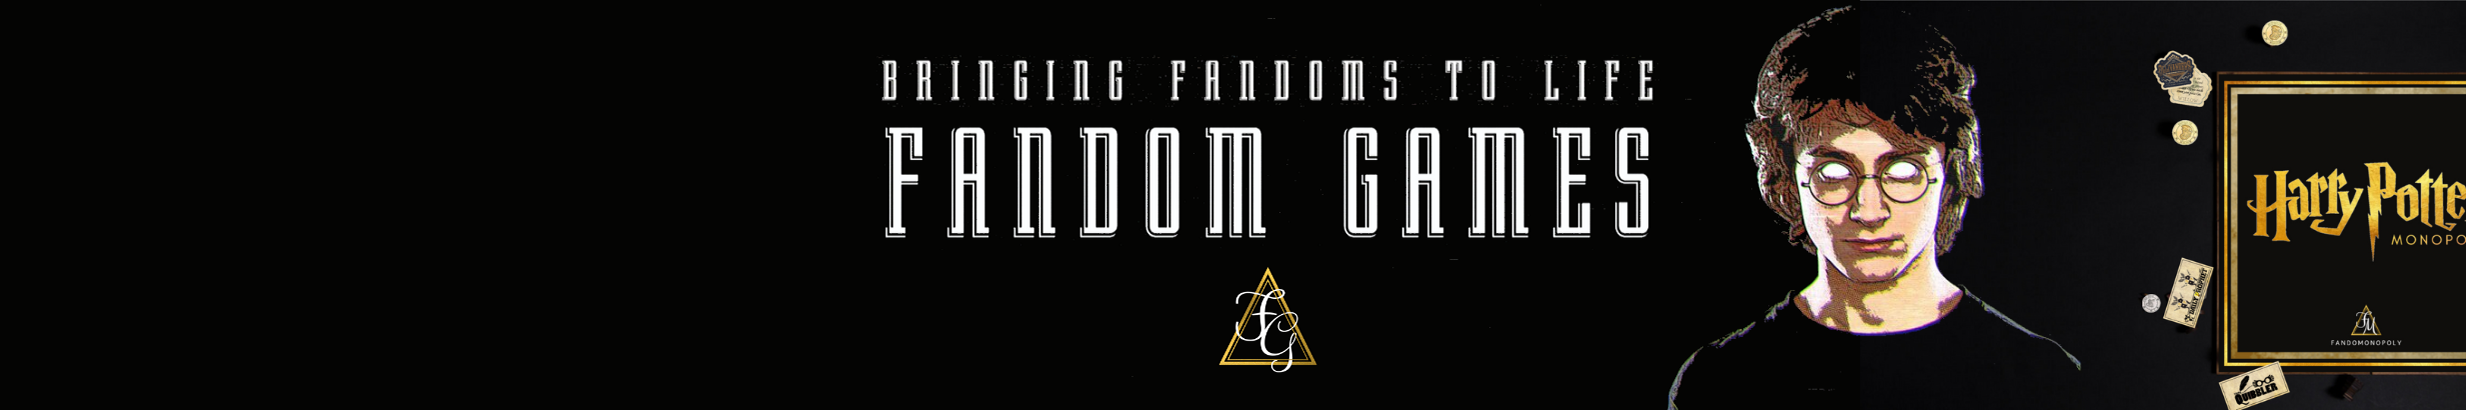 Fandom Games profil başlığı